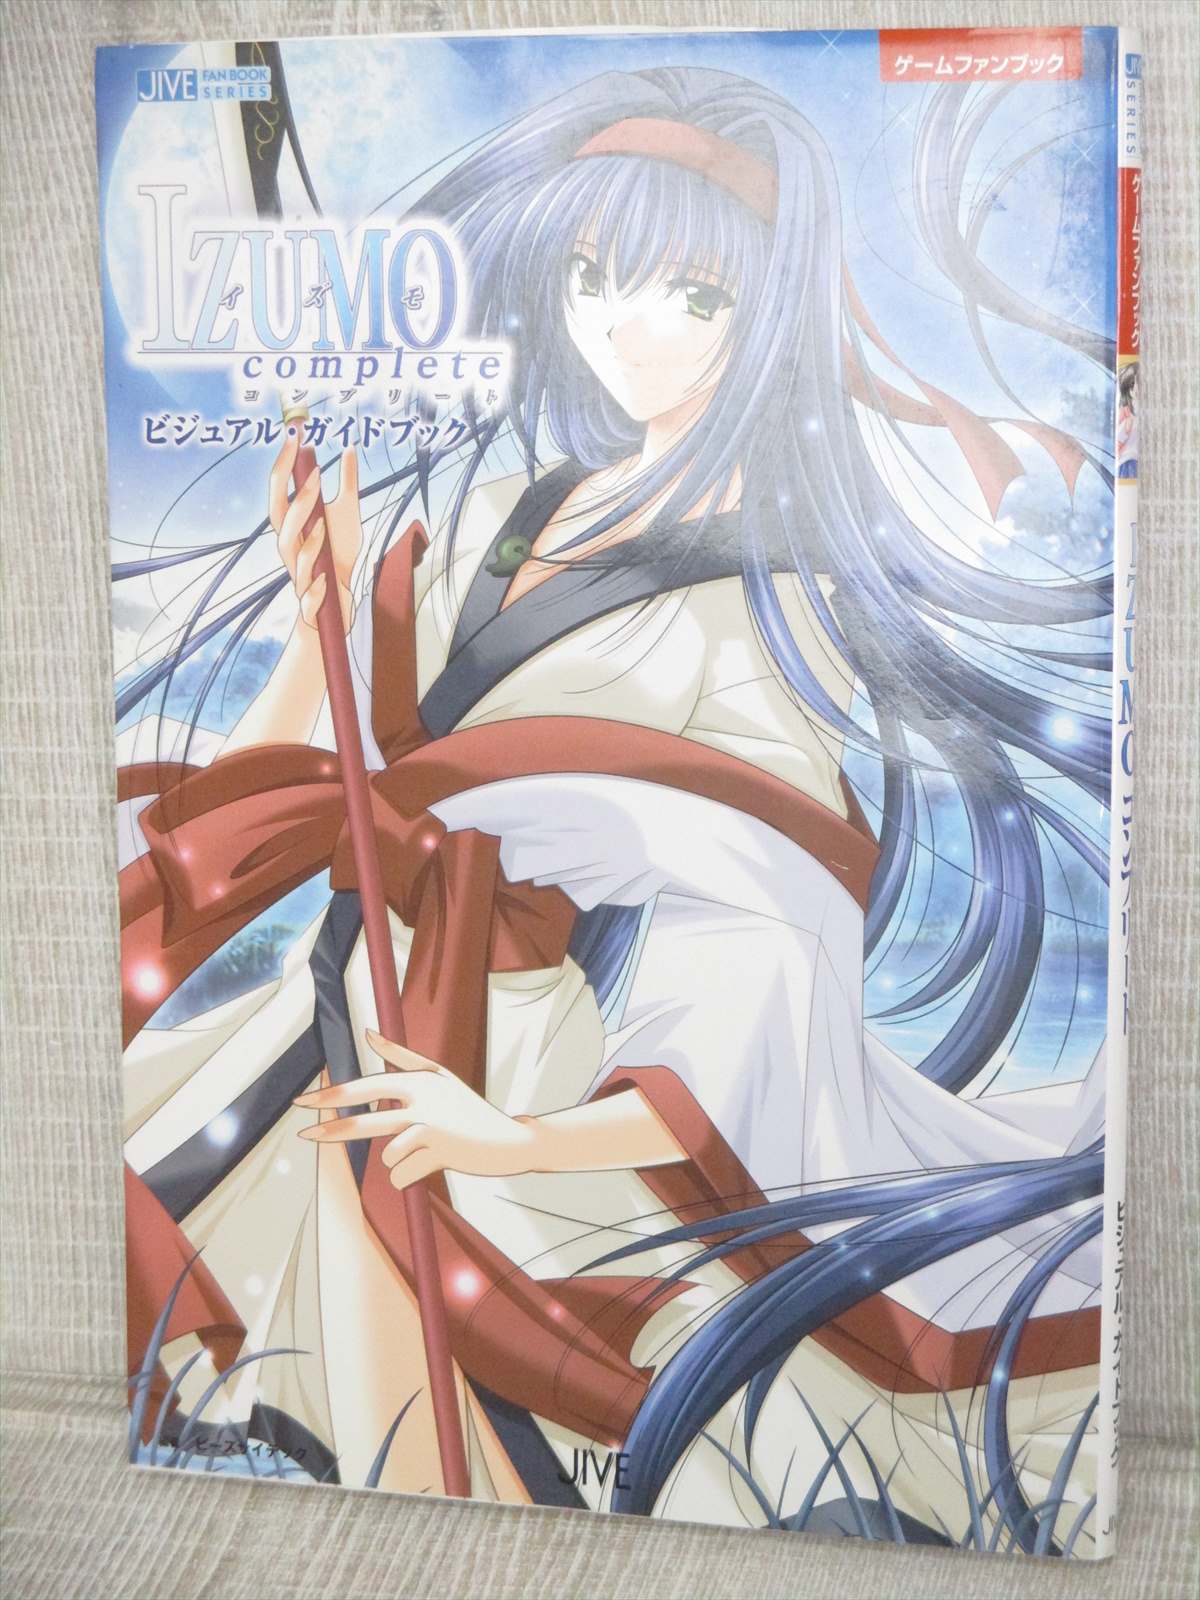 IZUMO COMPLETE Visual Guide Game Art Fan Book PS2 2005 JV82 | eBay